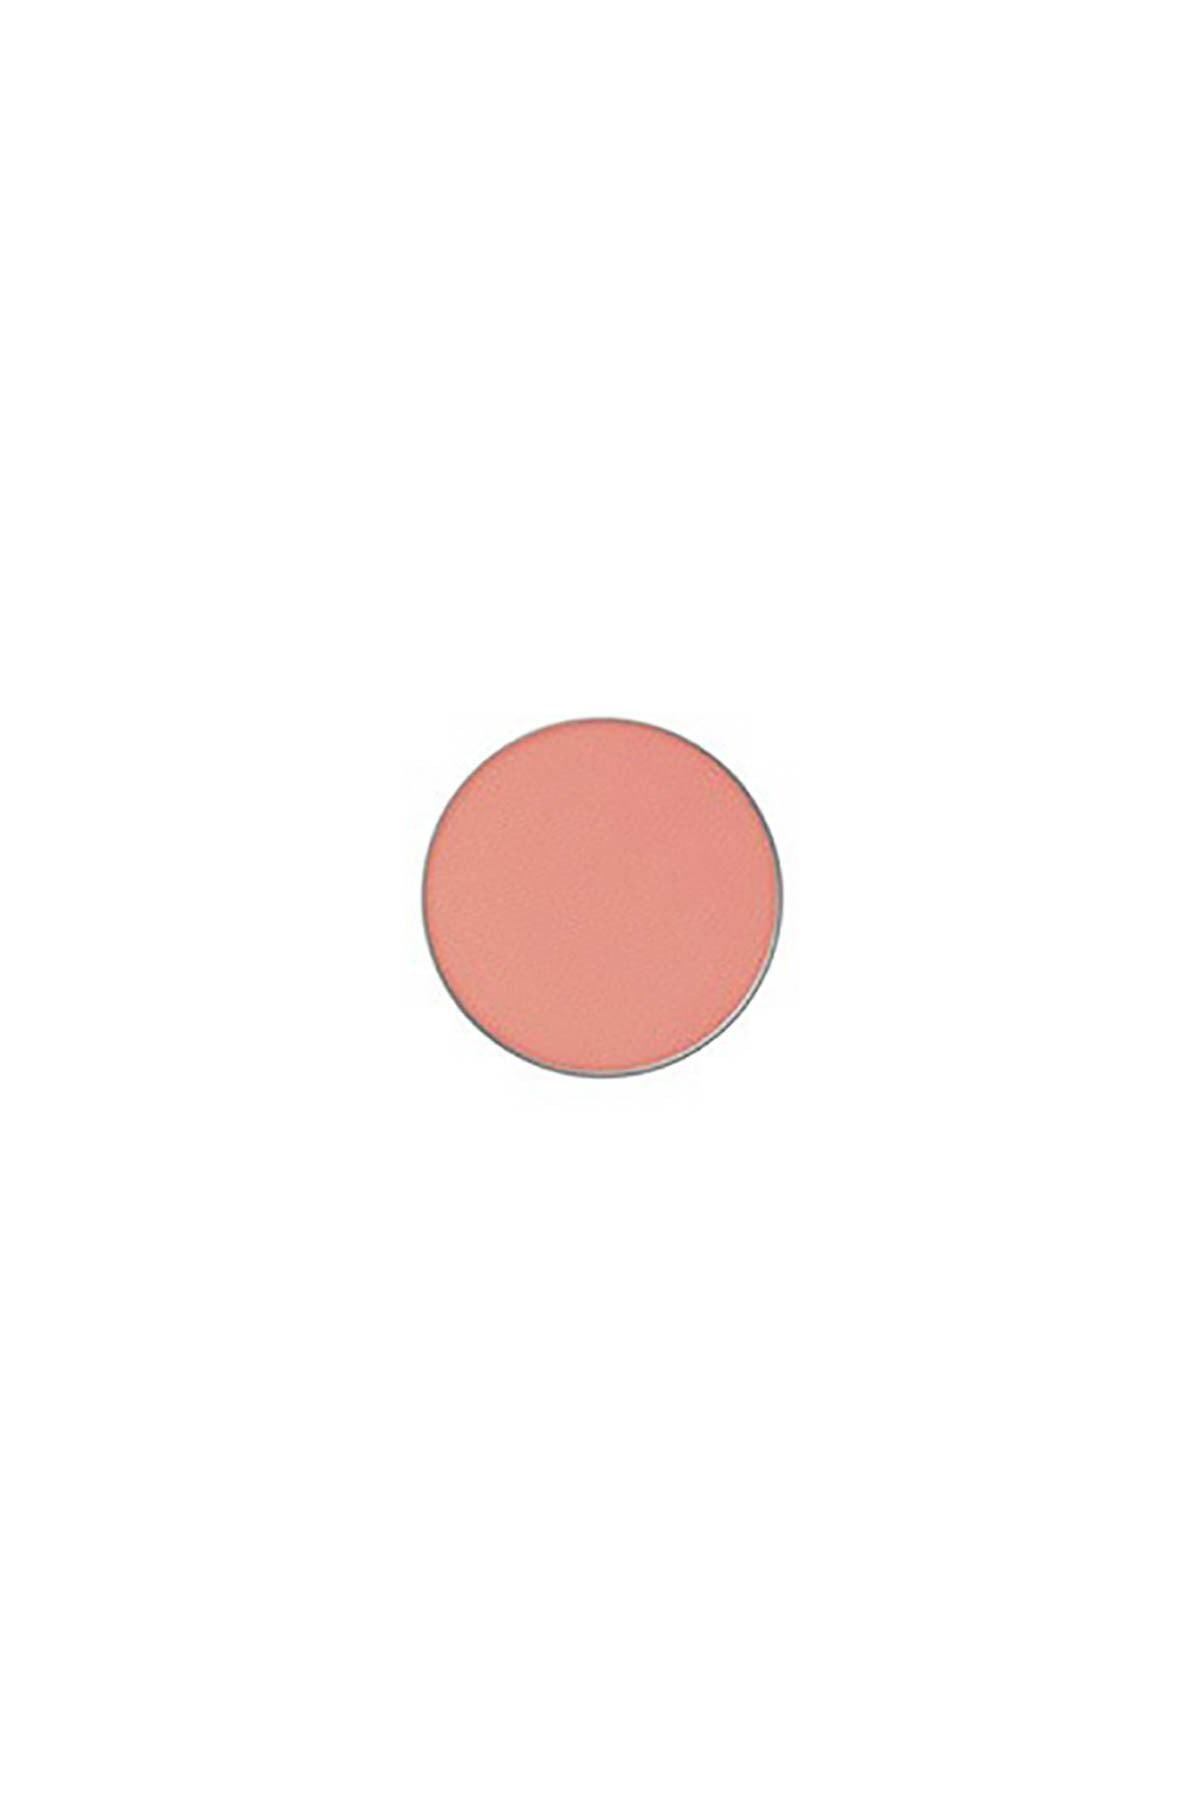 Mac Refill Göz Farı - Powder Kiss Soft Matte Strike A Pose 773602576395